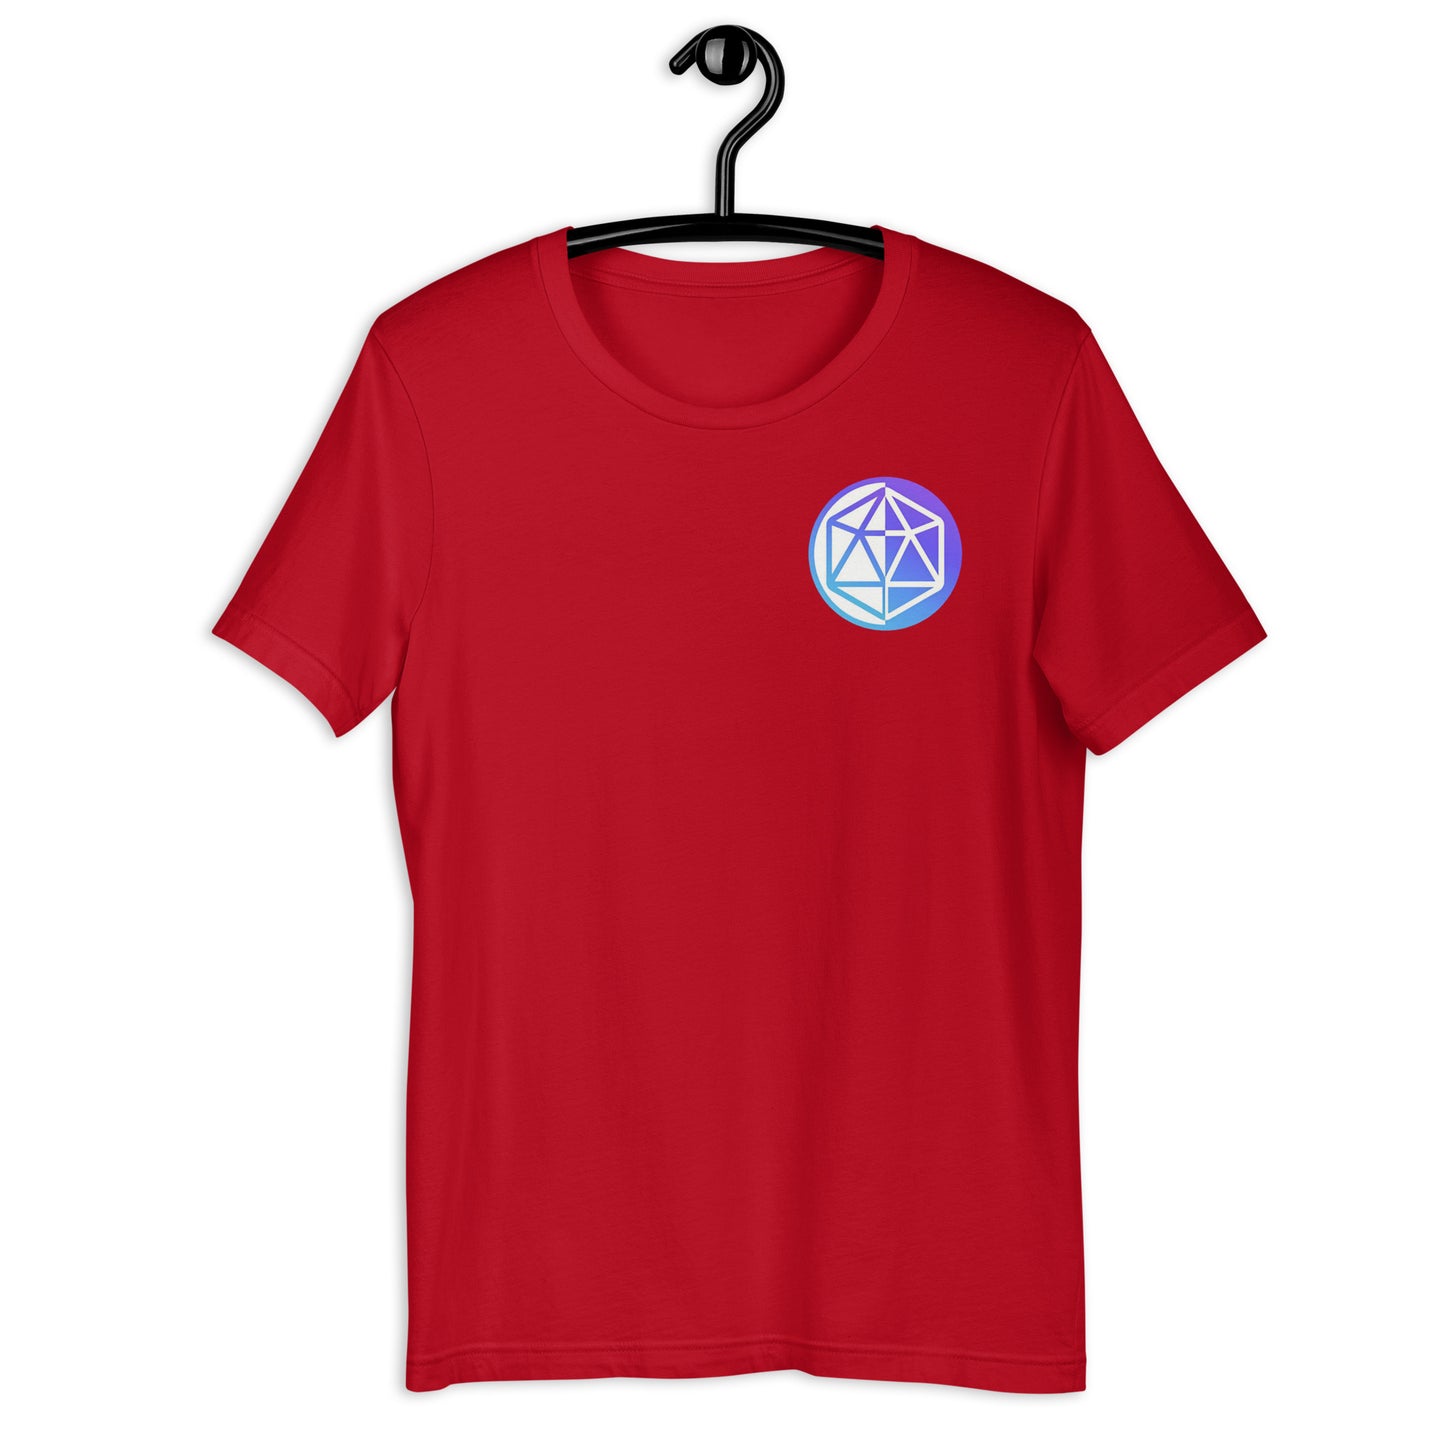 Hedron / Icosa Unisex T-Shirt (Front & Back)